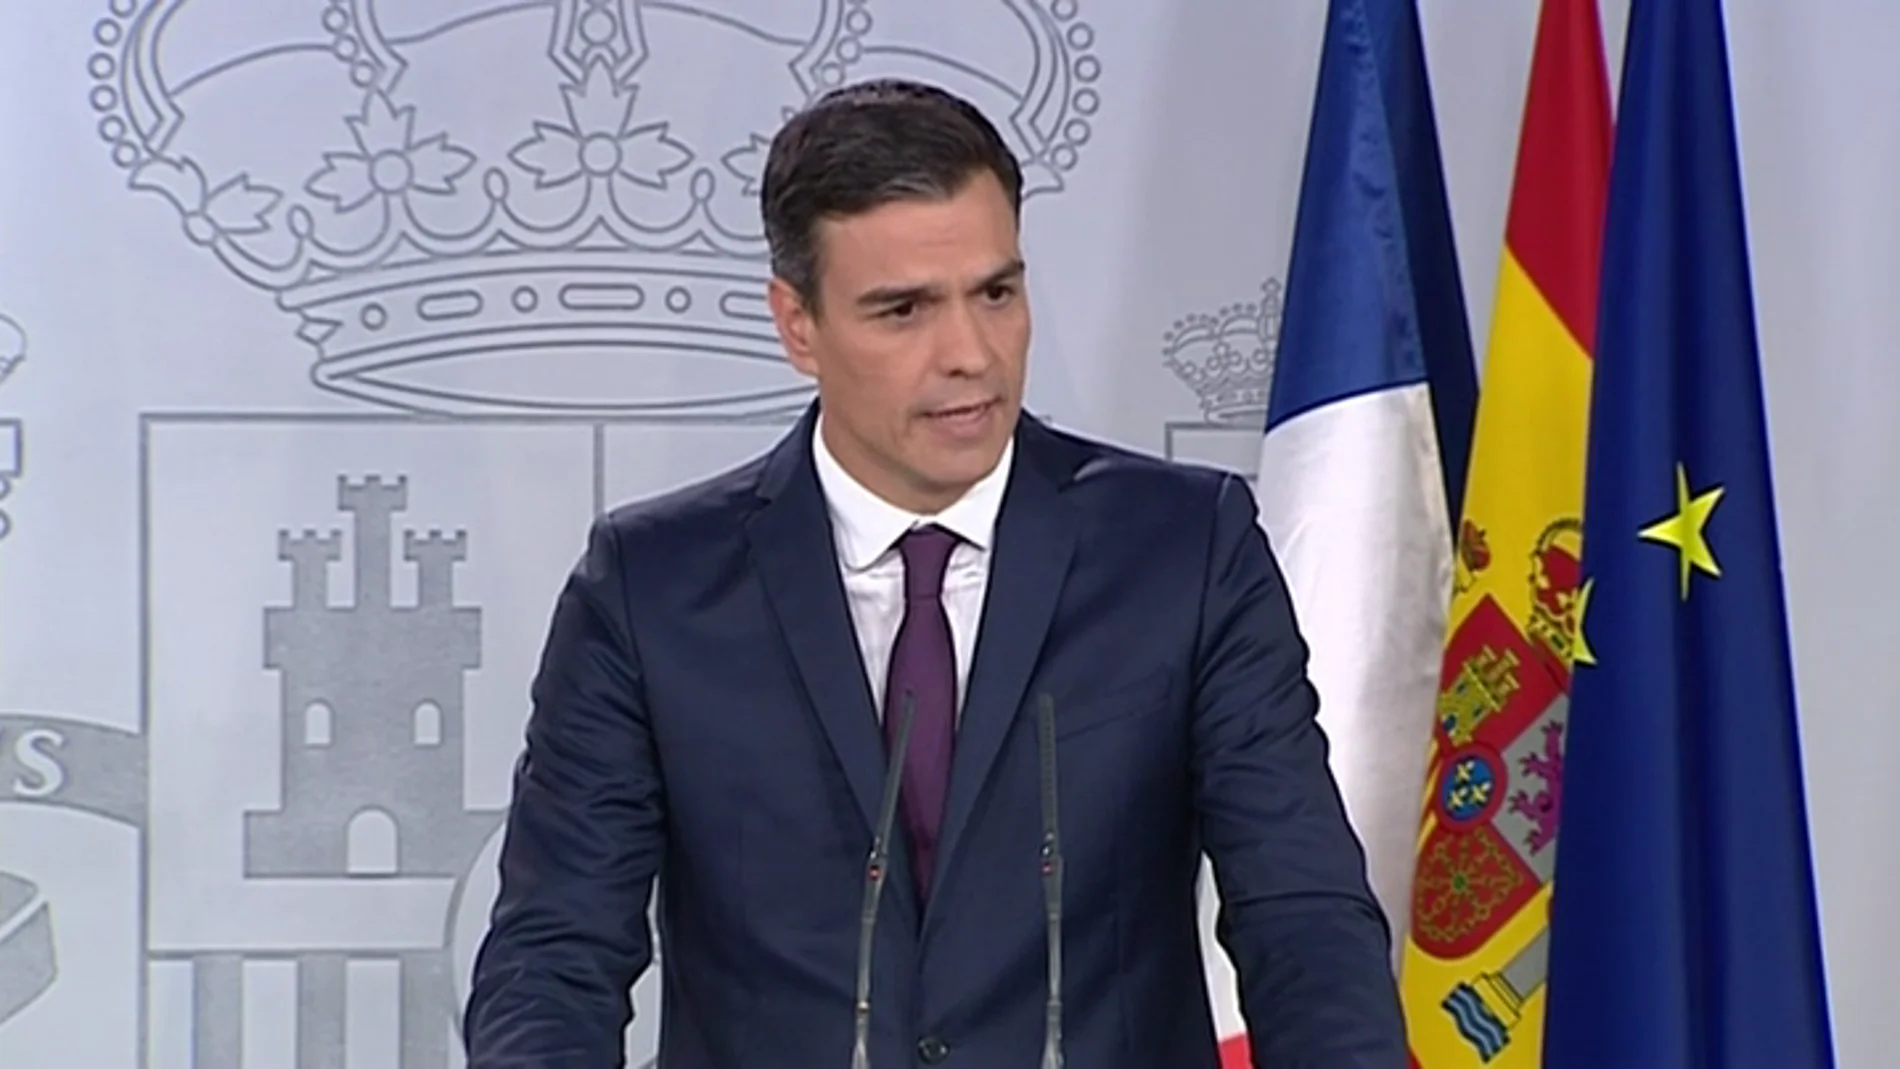 Sánchez anuncia un acuerdo con Macron sobre inmigración: "Es un desafío que exige una respuesta solidaria y responsable de la UE"